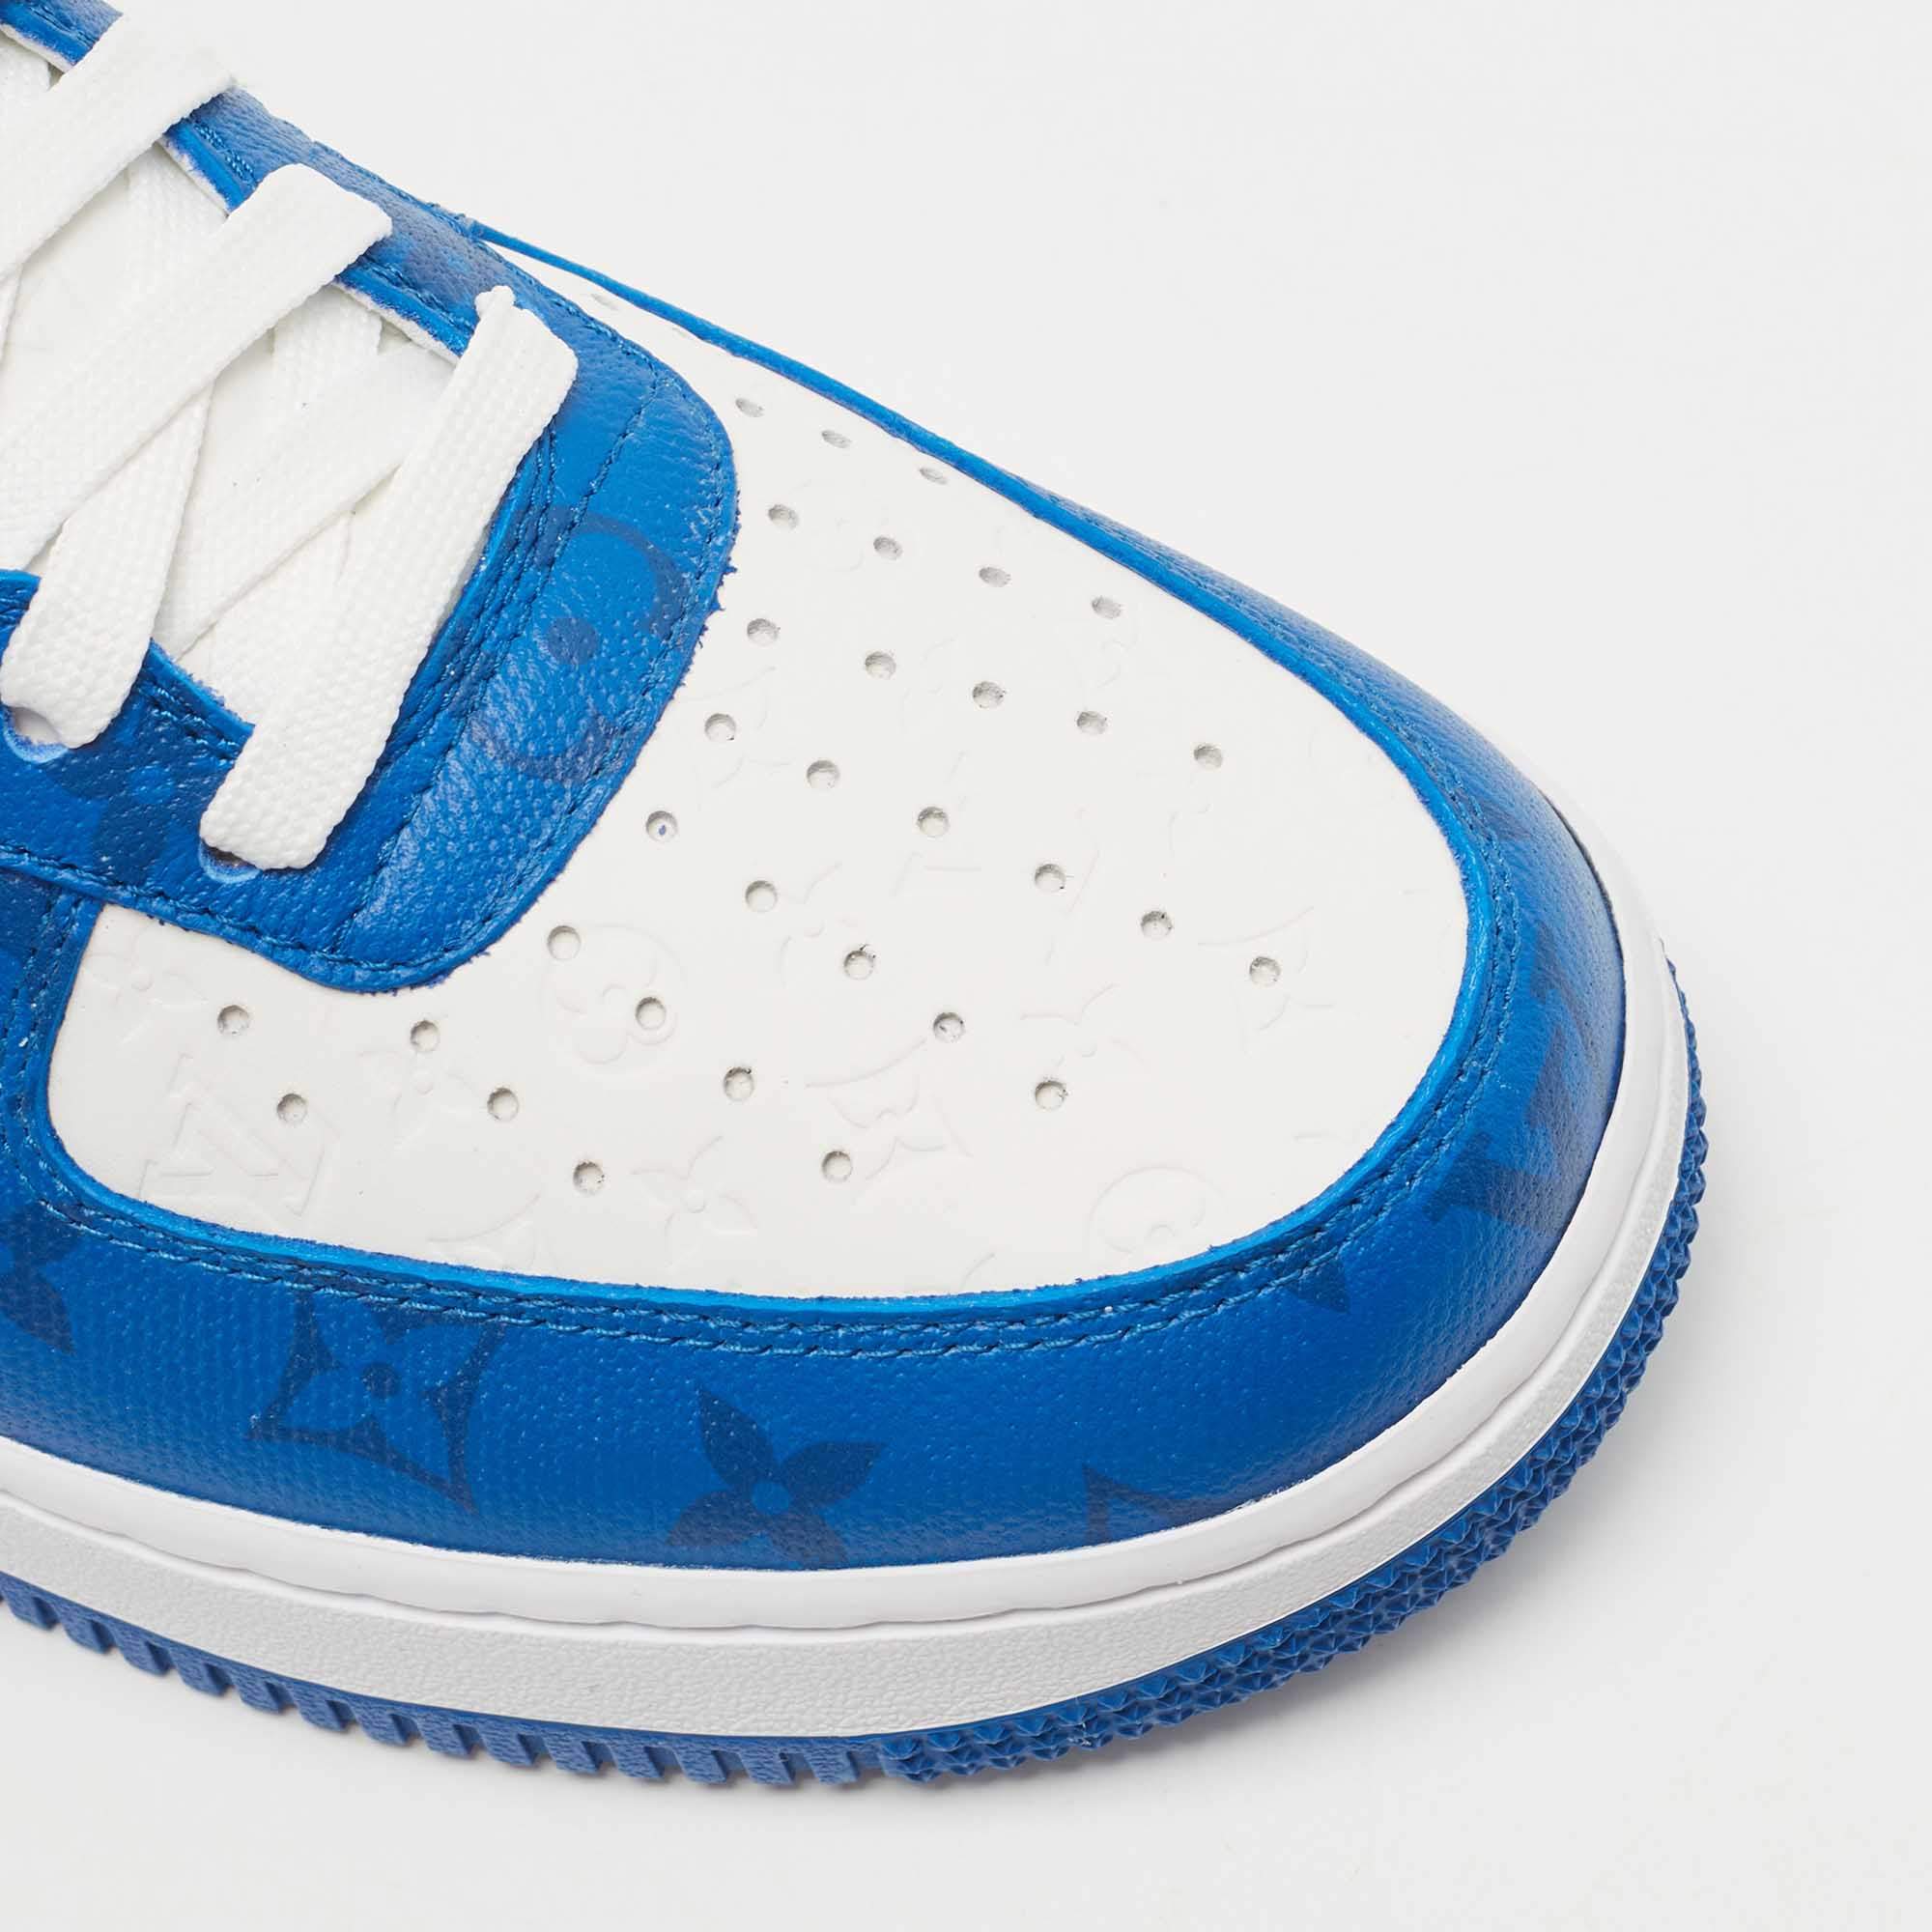 Tênis de luxo Louis vuitton  Futuristic shoes, Nike shoes blue, Nike  fashion shoes